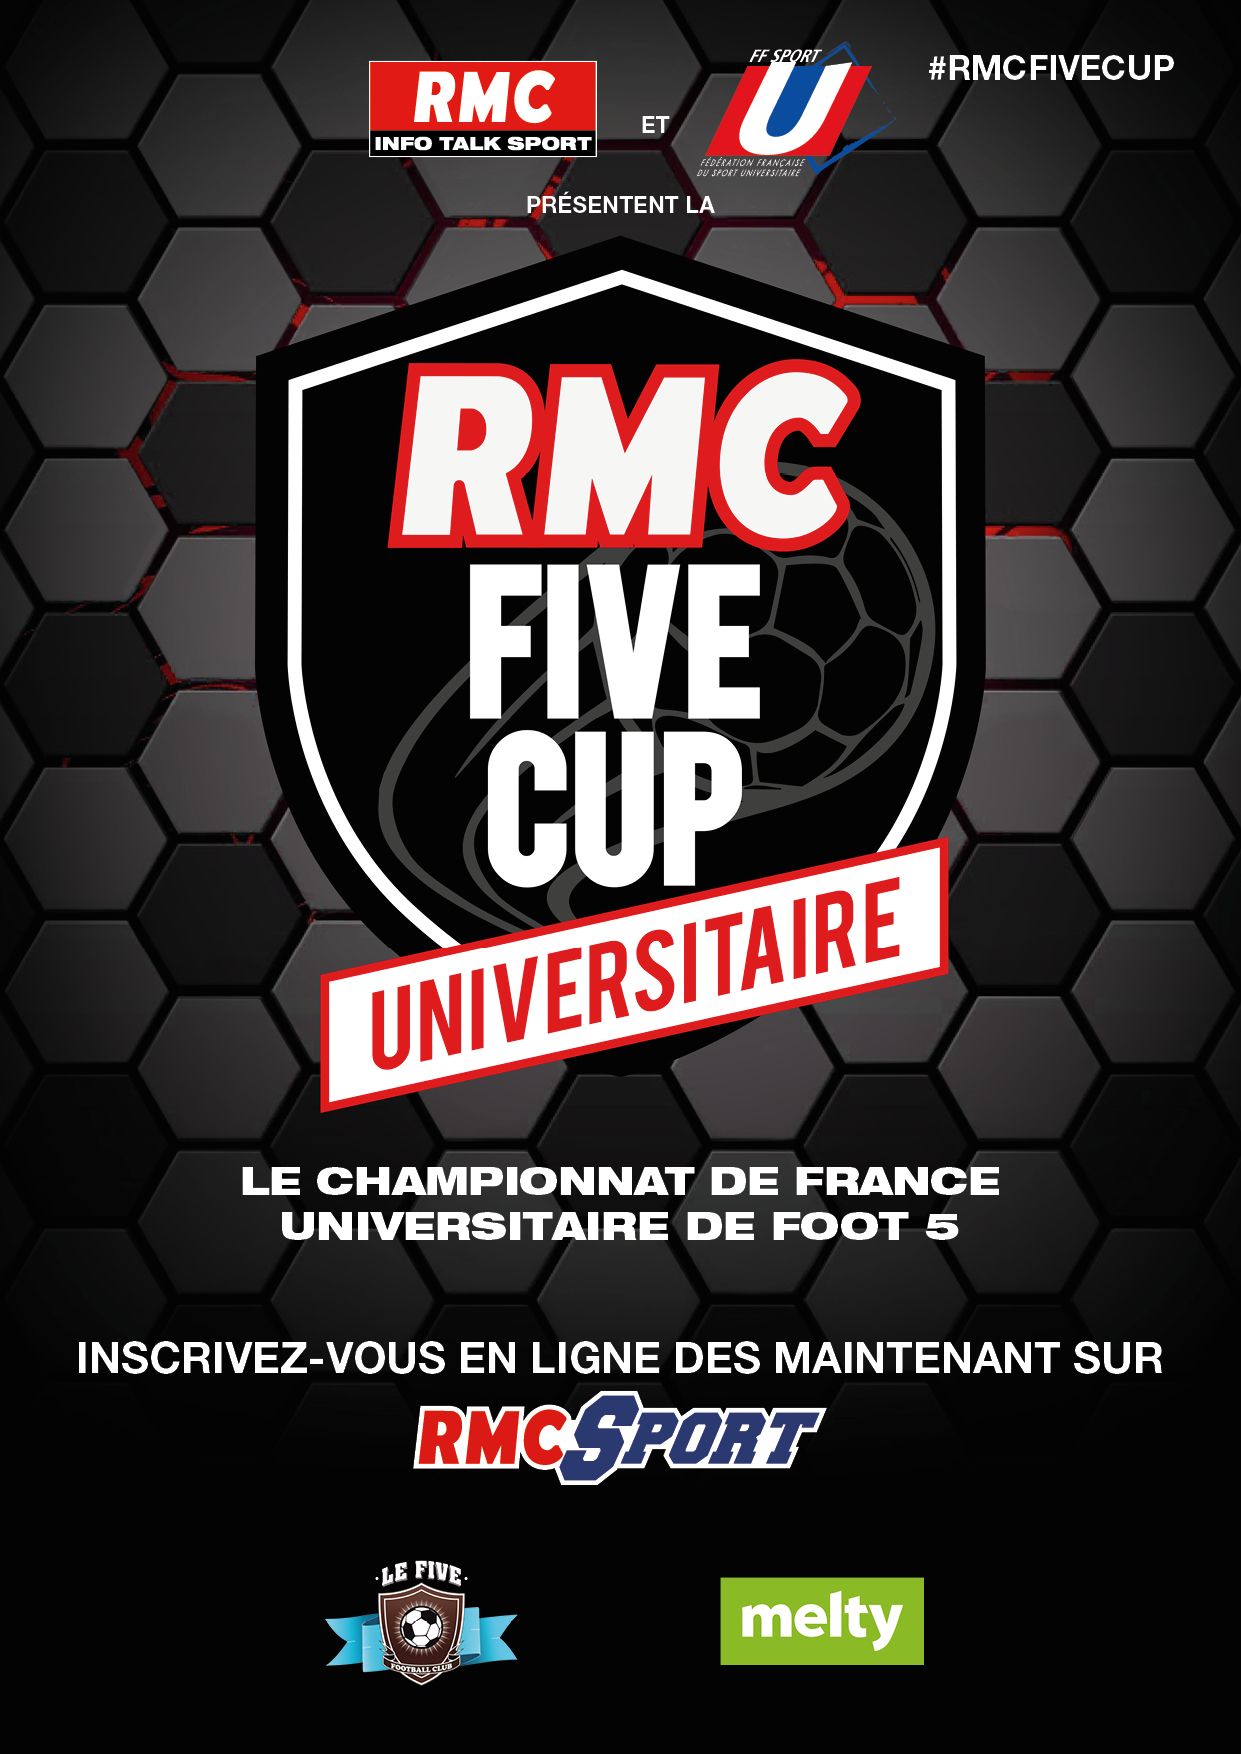 RMC lance la Five Cup Universitaire